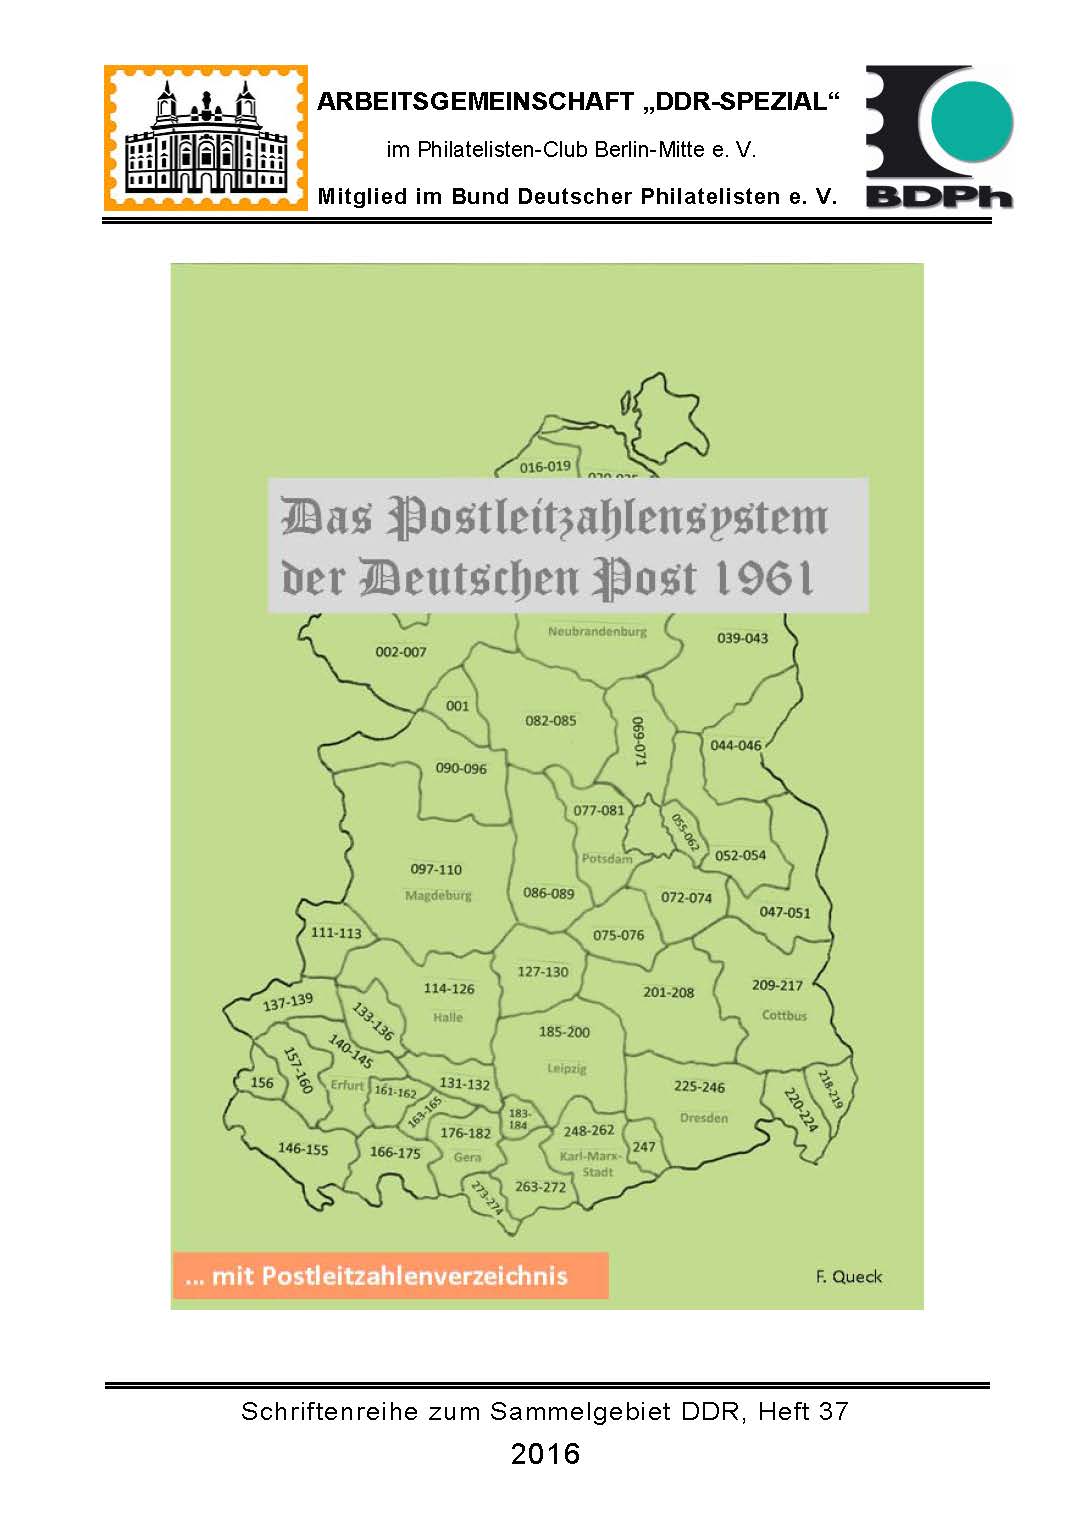 DDR Philatelie Literatur Postleitzahlen Verzeichnis